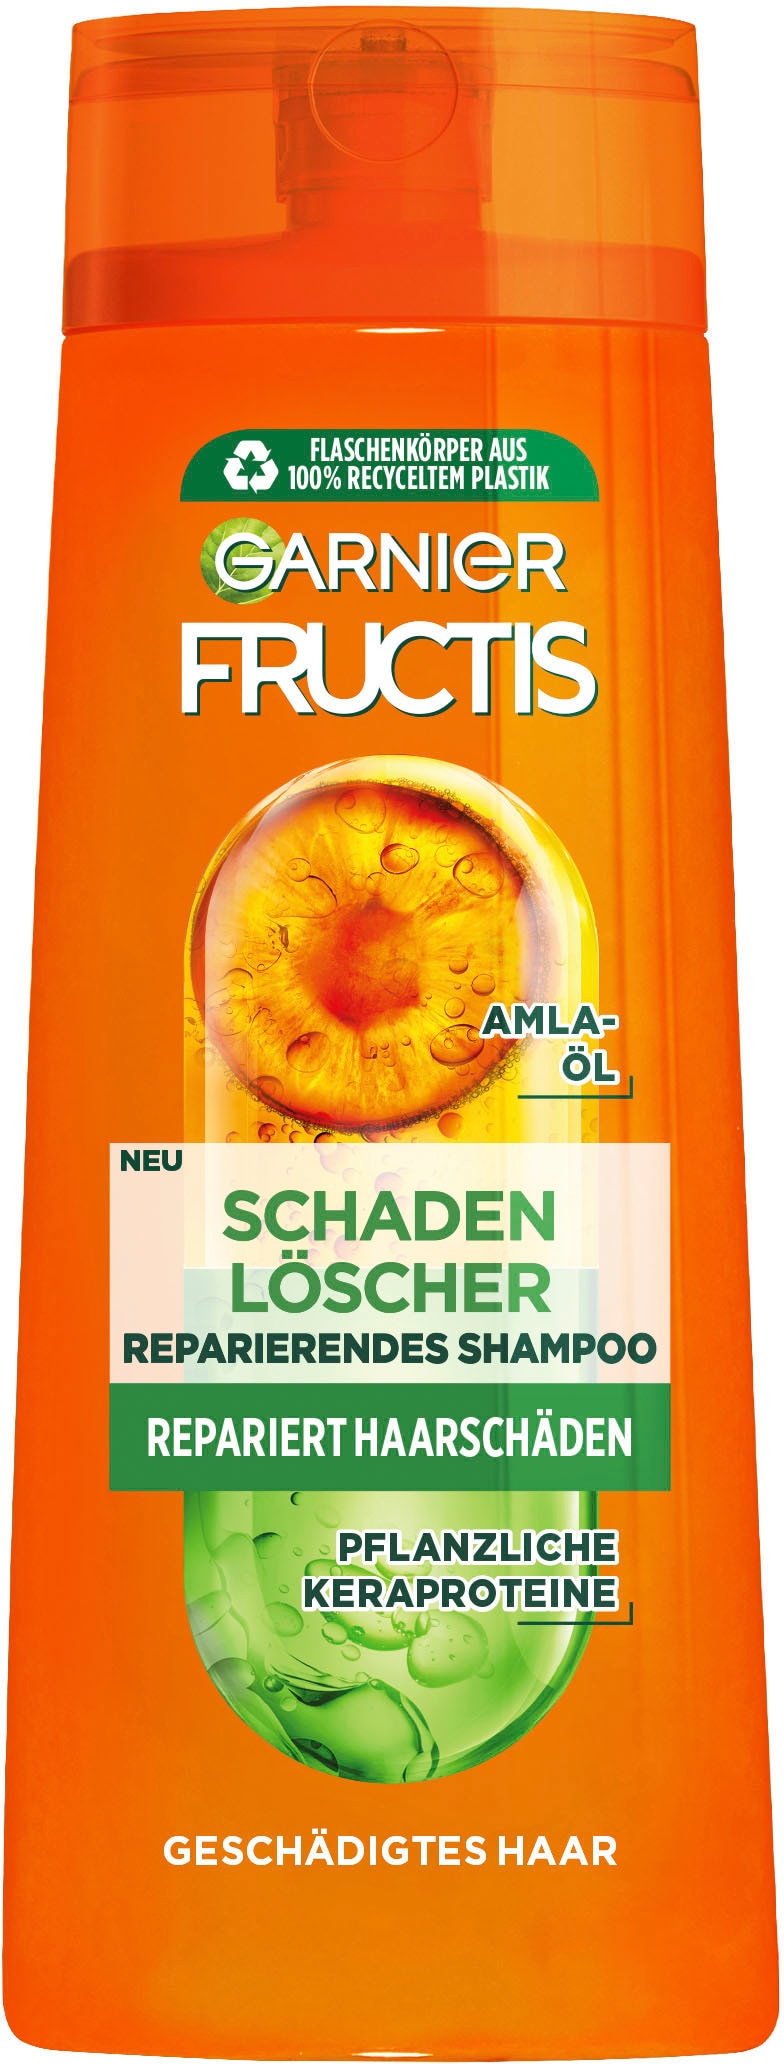 »Garnier Online GARNIER Shampoo« Schadenlöscher Haarshampoo OTTO Shop Fructis im